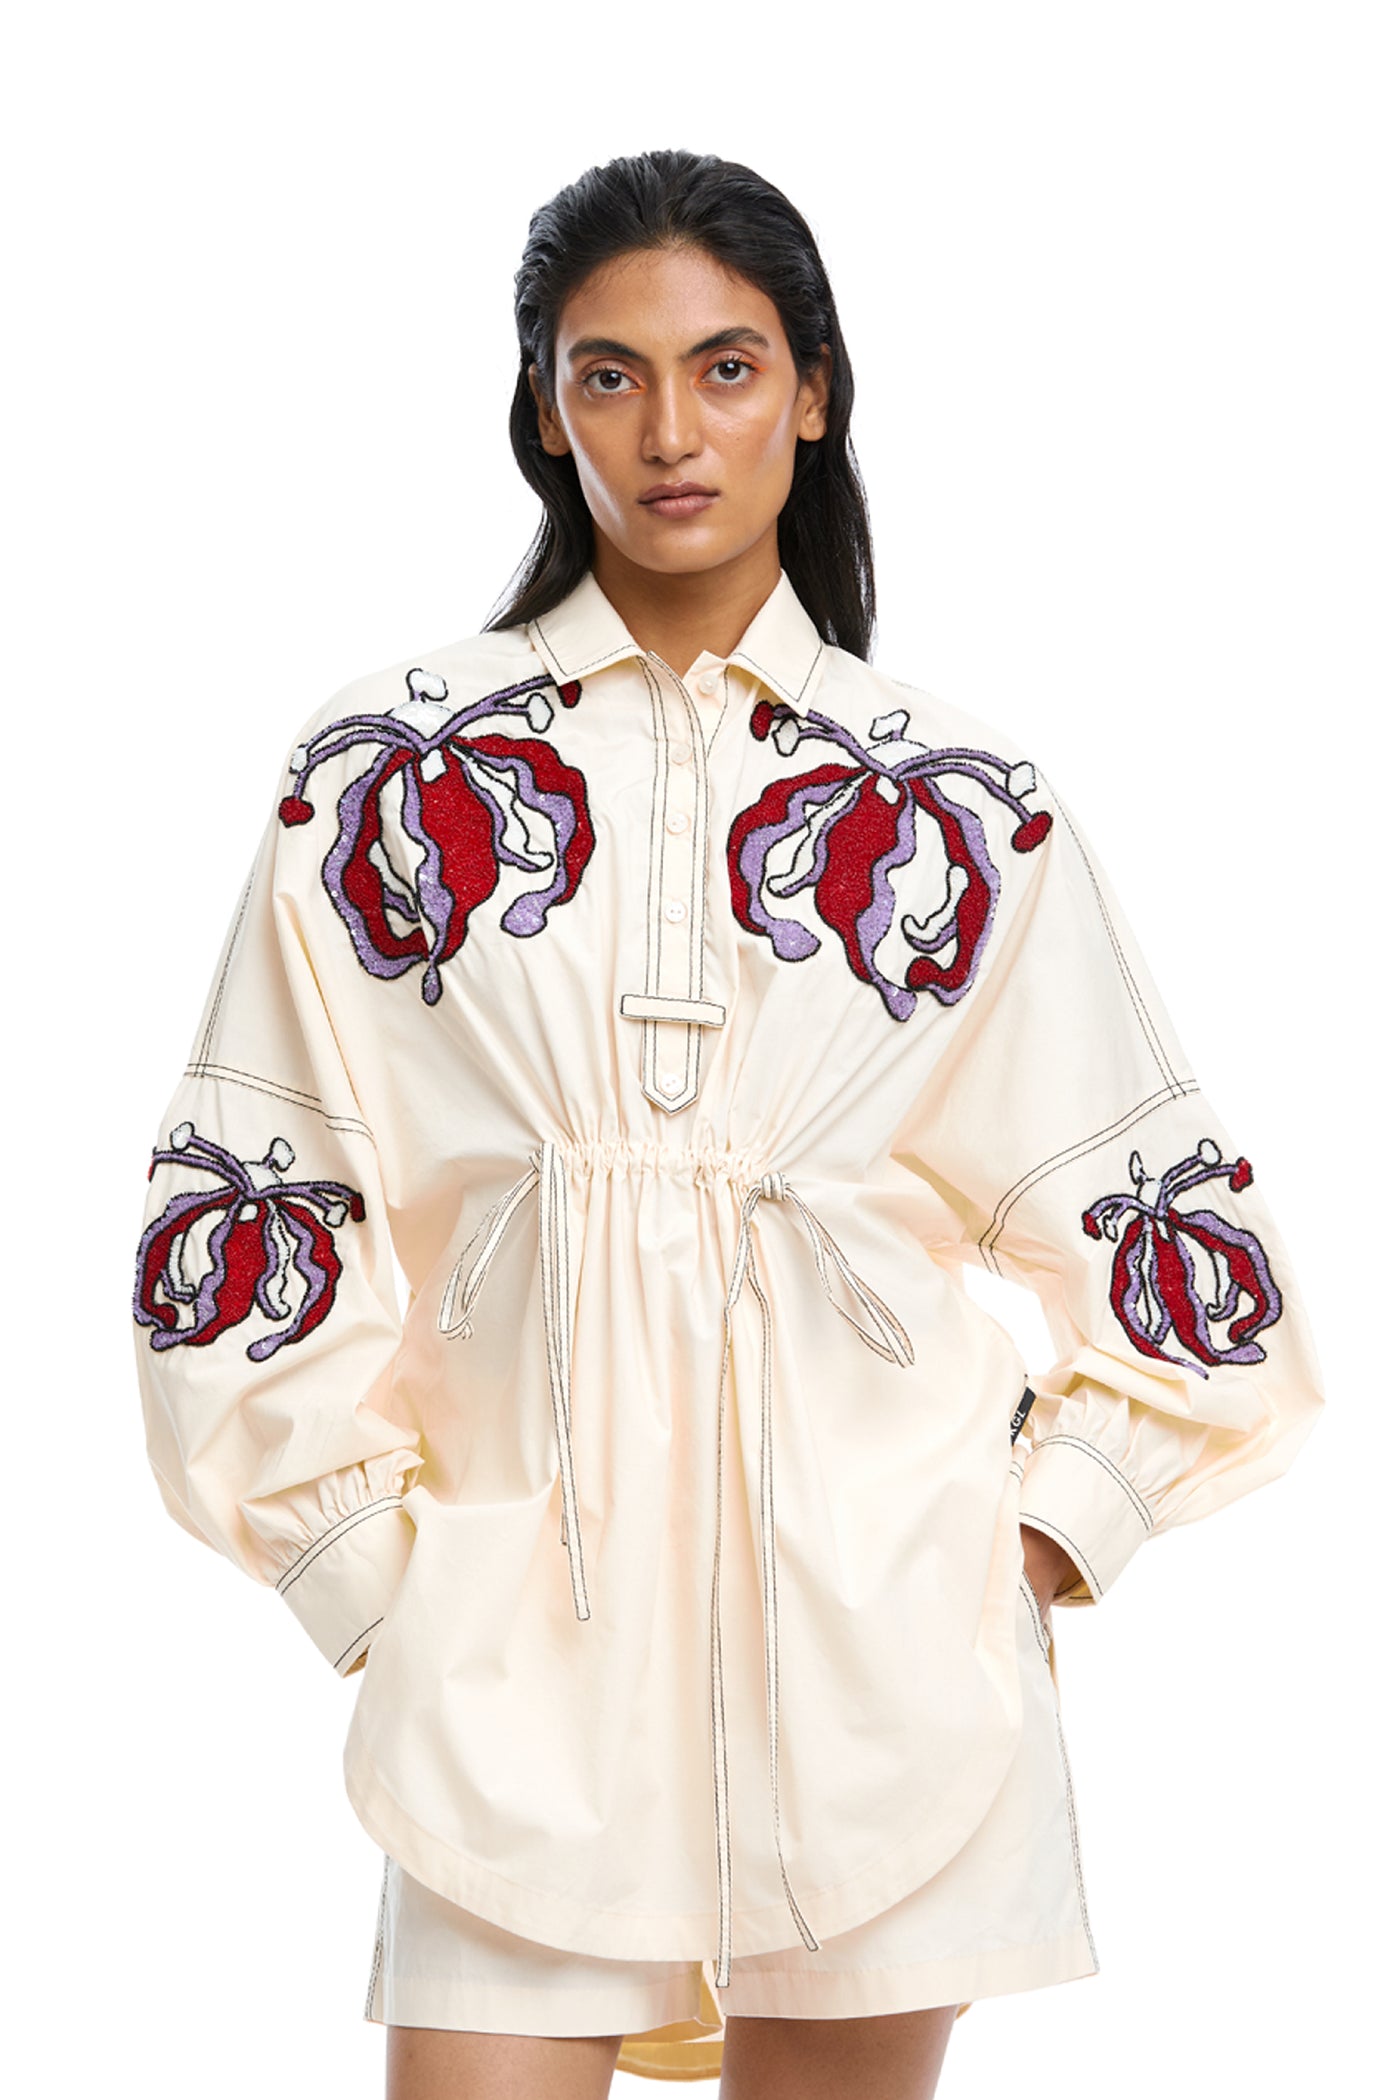 Kanika Goyal Label Iris Hand Embellished Shirt indian designer wear online shopping melange singapore